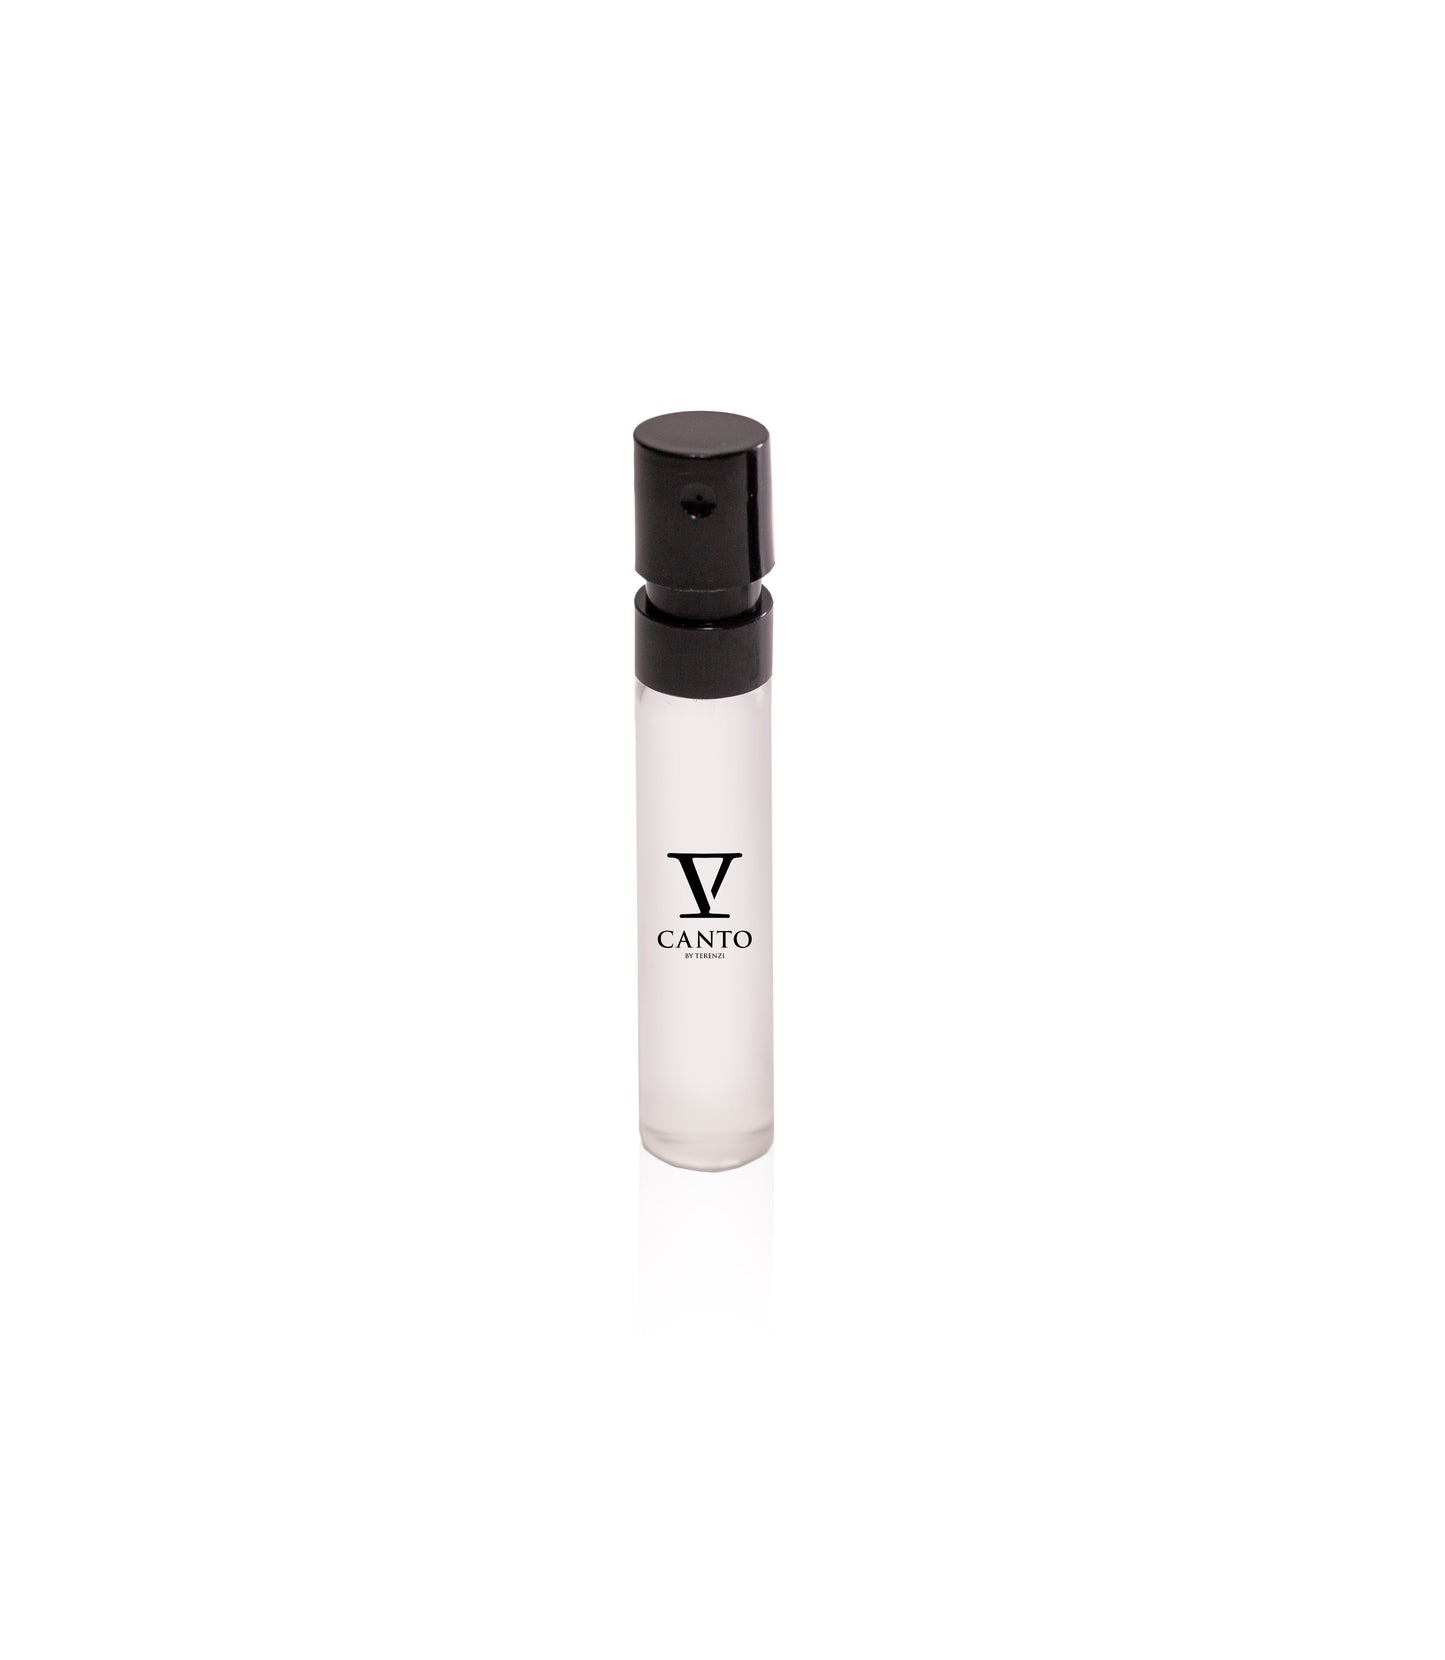 CURARO 1.5ml Sample Vial - Extrait de Parfum